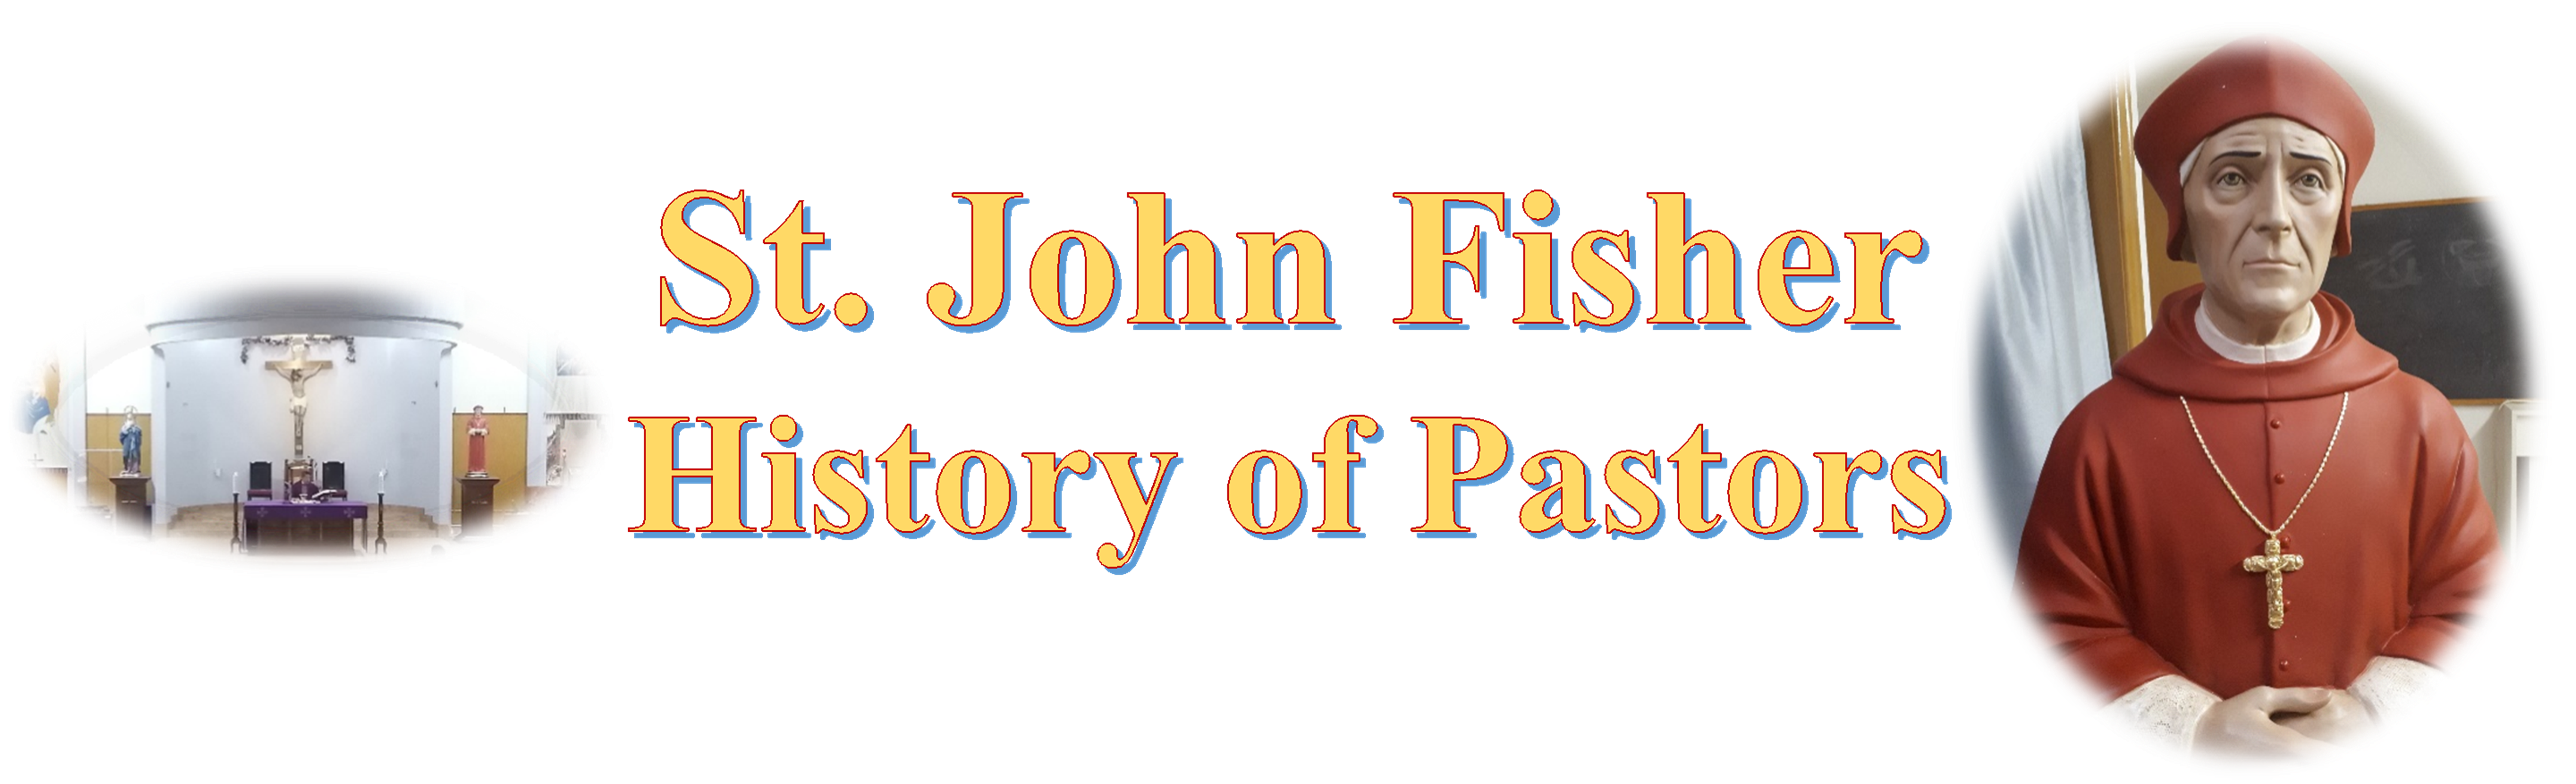 St John Fisher History of Pastors banner